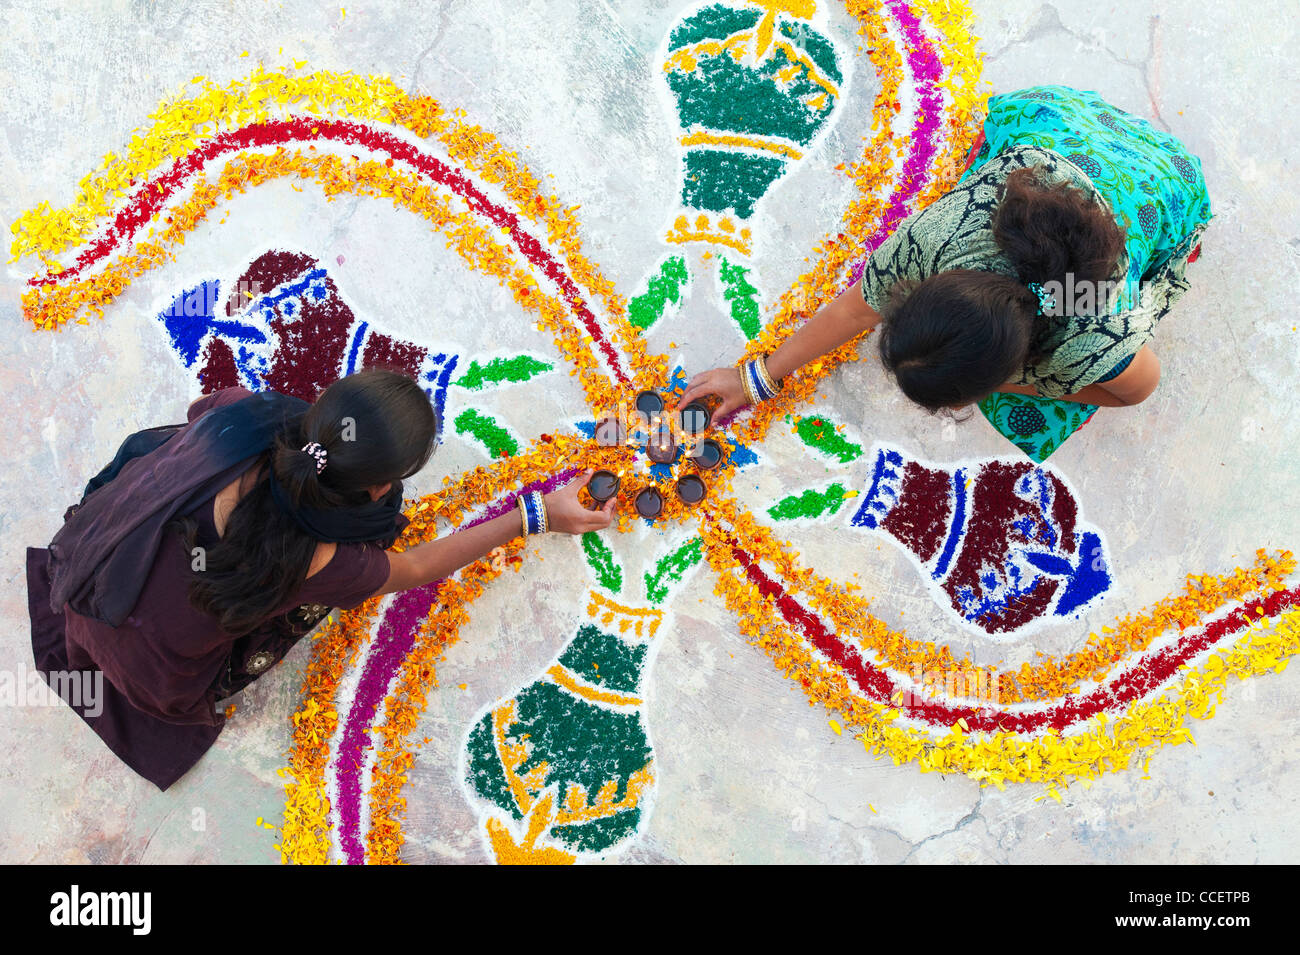 Les sœurs de l'Inde faisant un rangoli design au festival de Sankranthi. Puttaparthi, Andhra Pradesh, Inde Banque D'Images